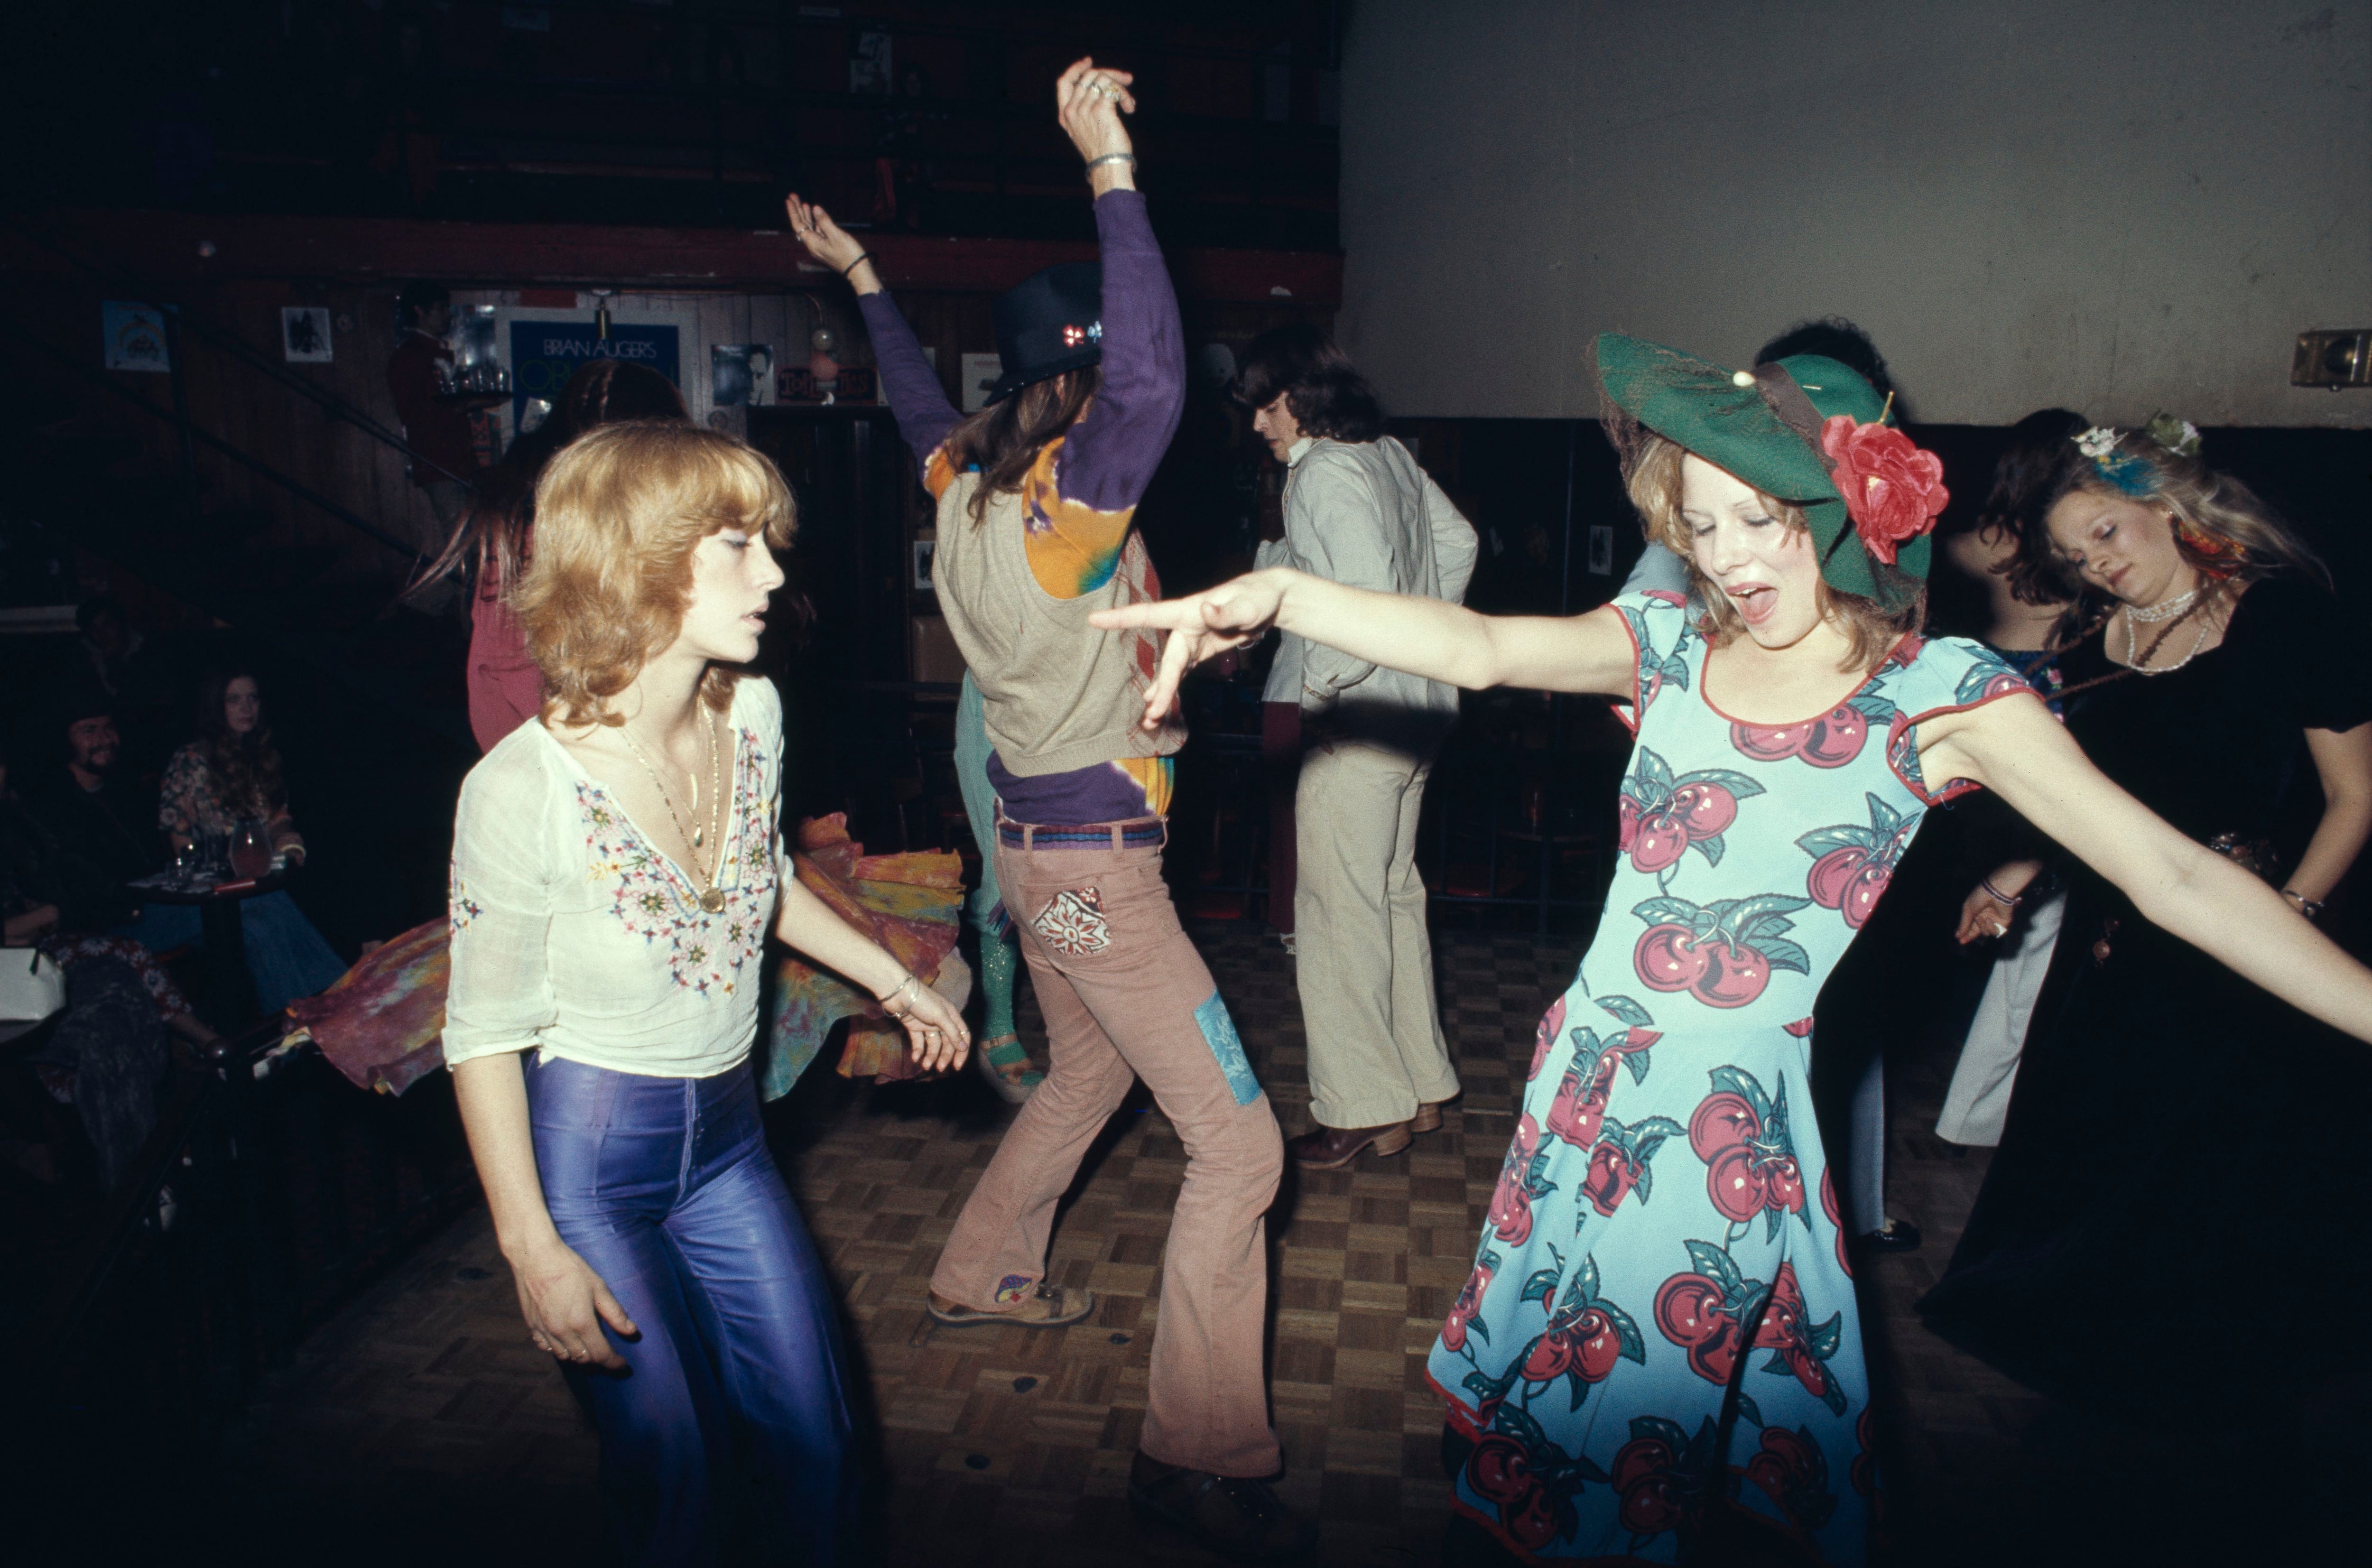 La ciencia del baile: “En la discoteca nos sincronizamos como una bandada de estorninos”